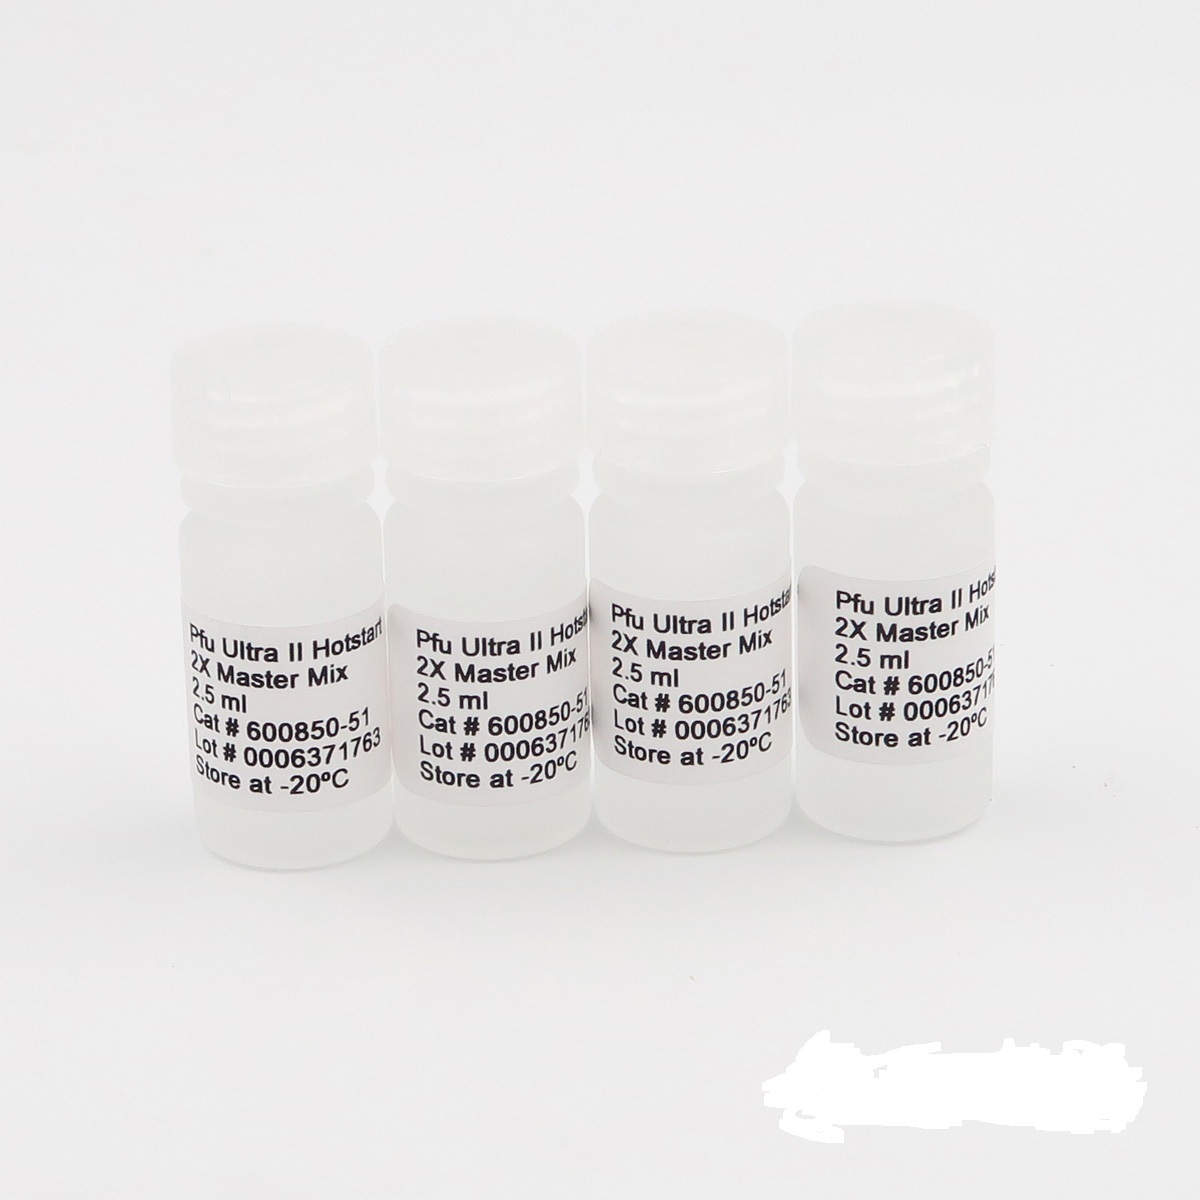 本迪布焦型埃博拉病毒染料法荧光定量RT-PCR试剂盒